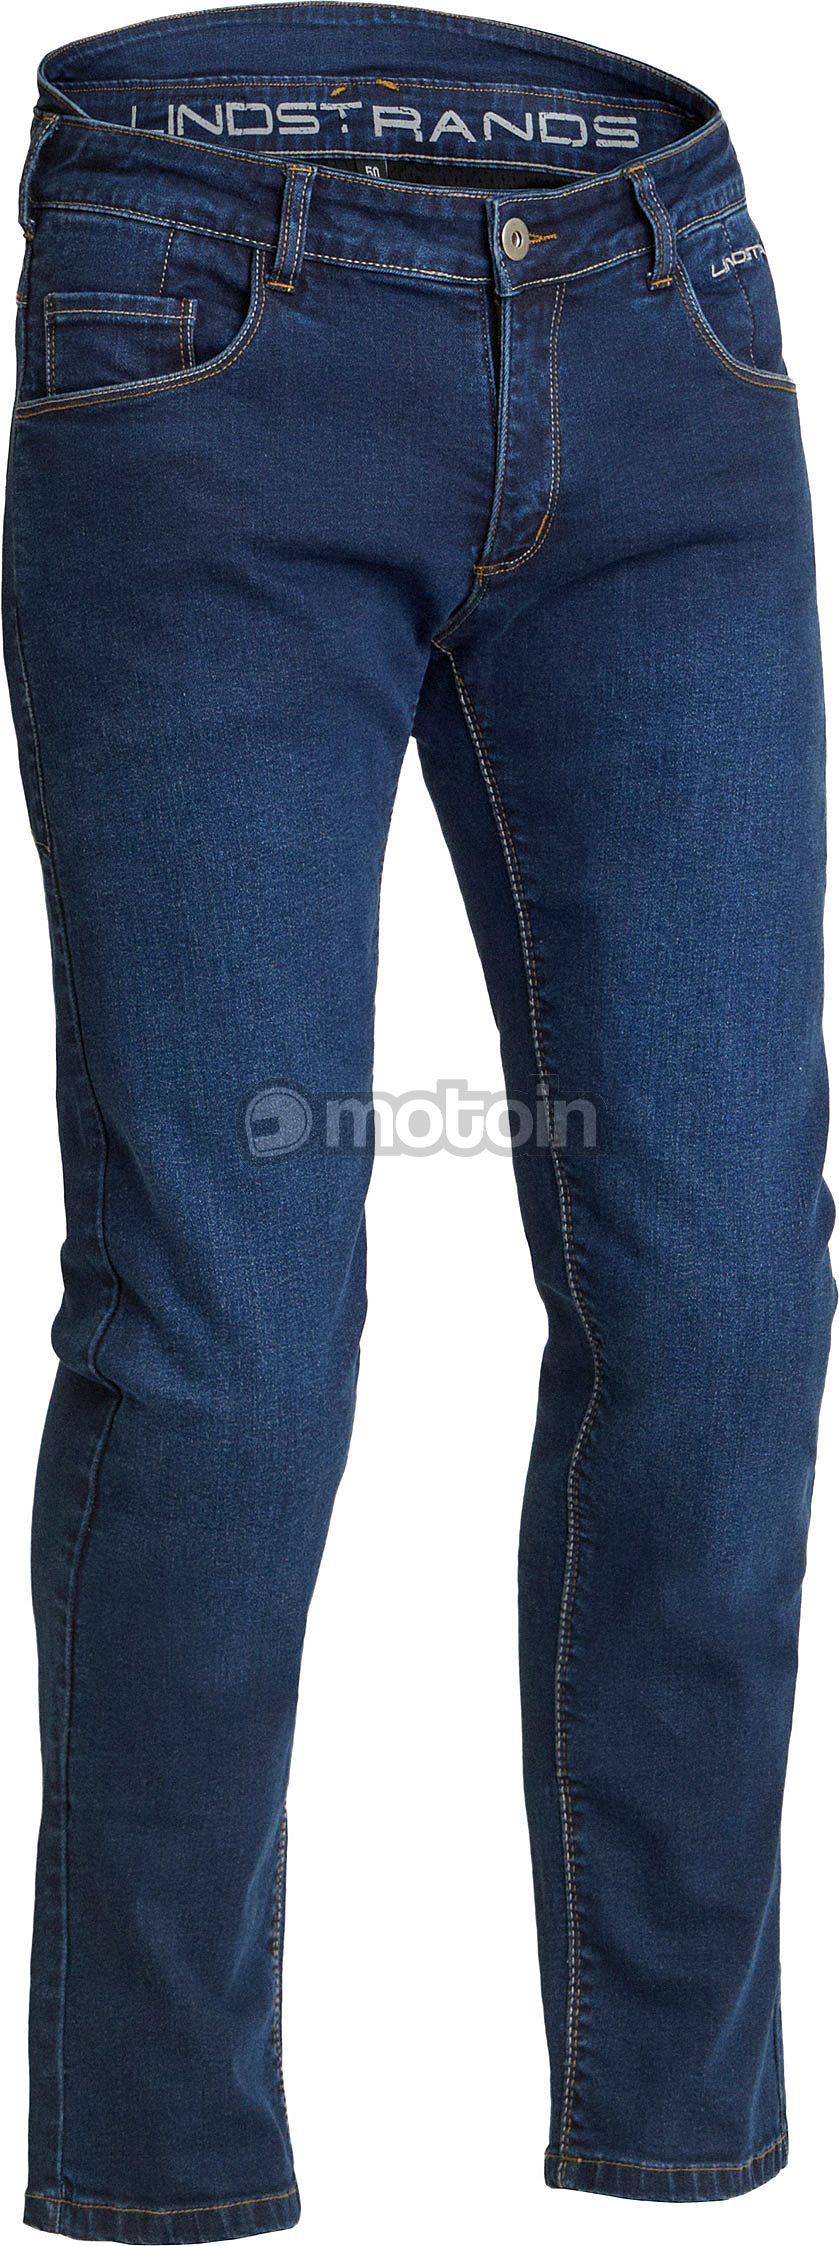 Lindstrands Hemse, jeans